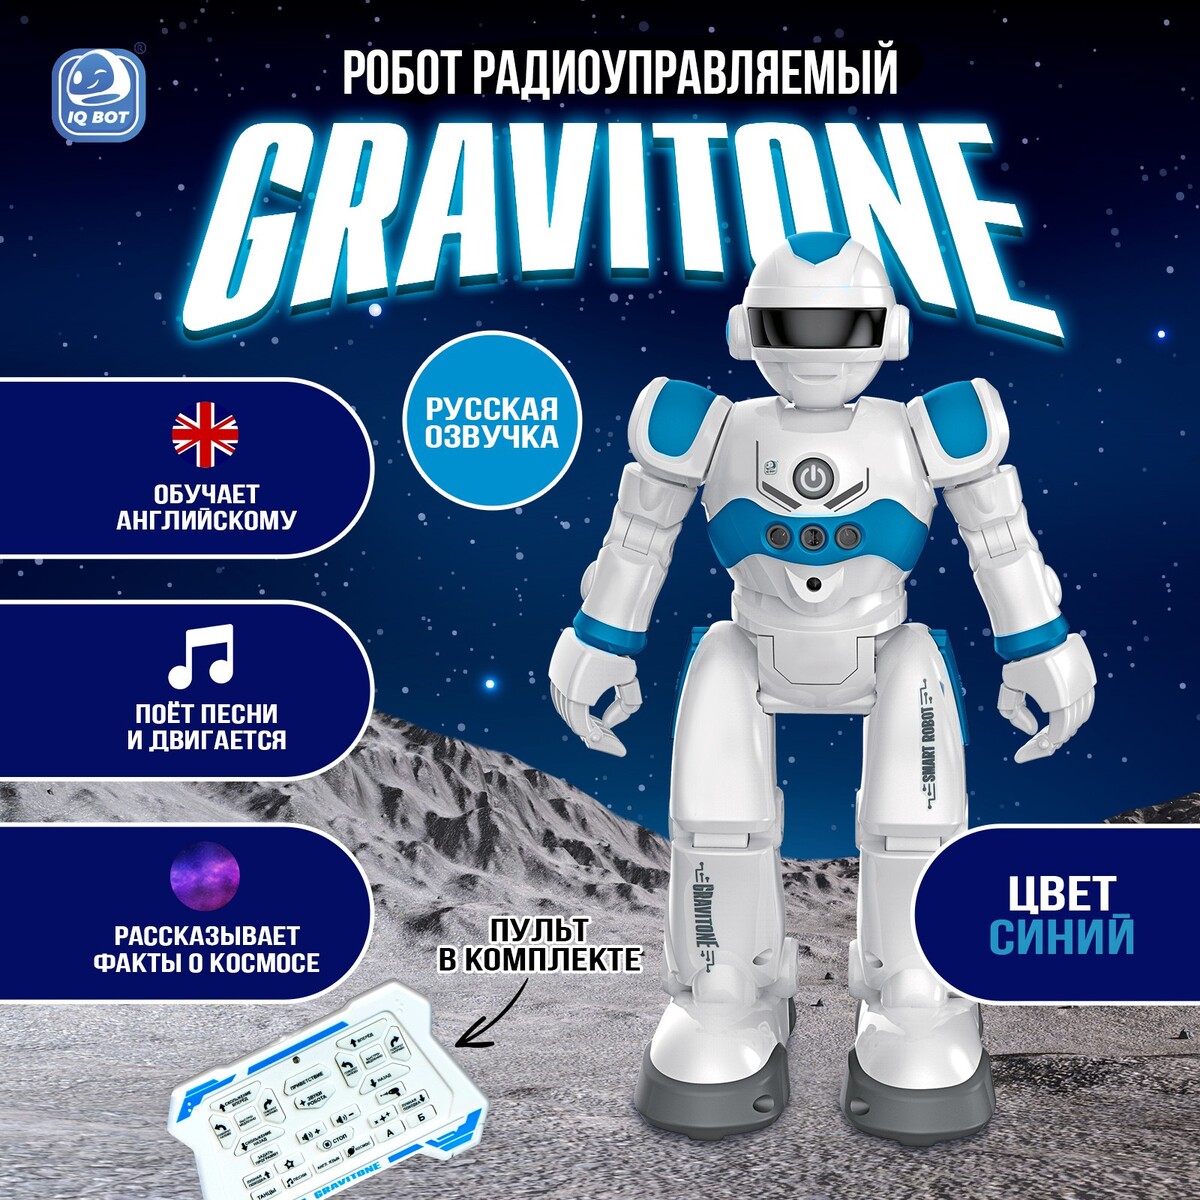 Робот радиоуправляемый iq bot gravitone, русское озвучивание, цвет синий рождённый ходить миофасциальная эффективность революция в понимании механики движения эрлз д